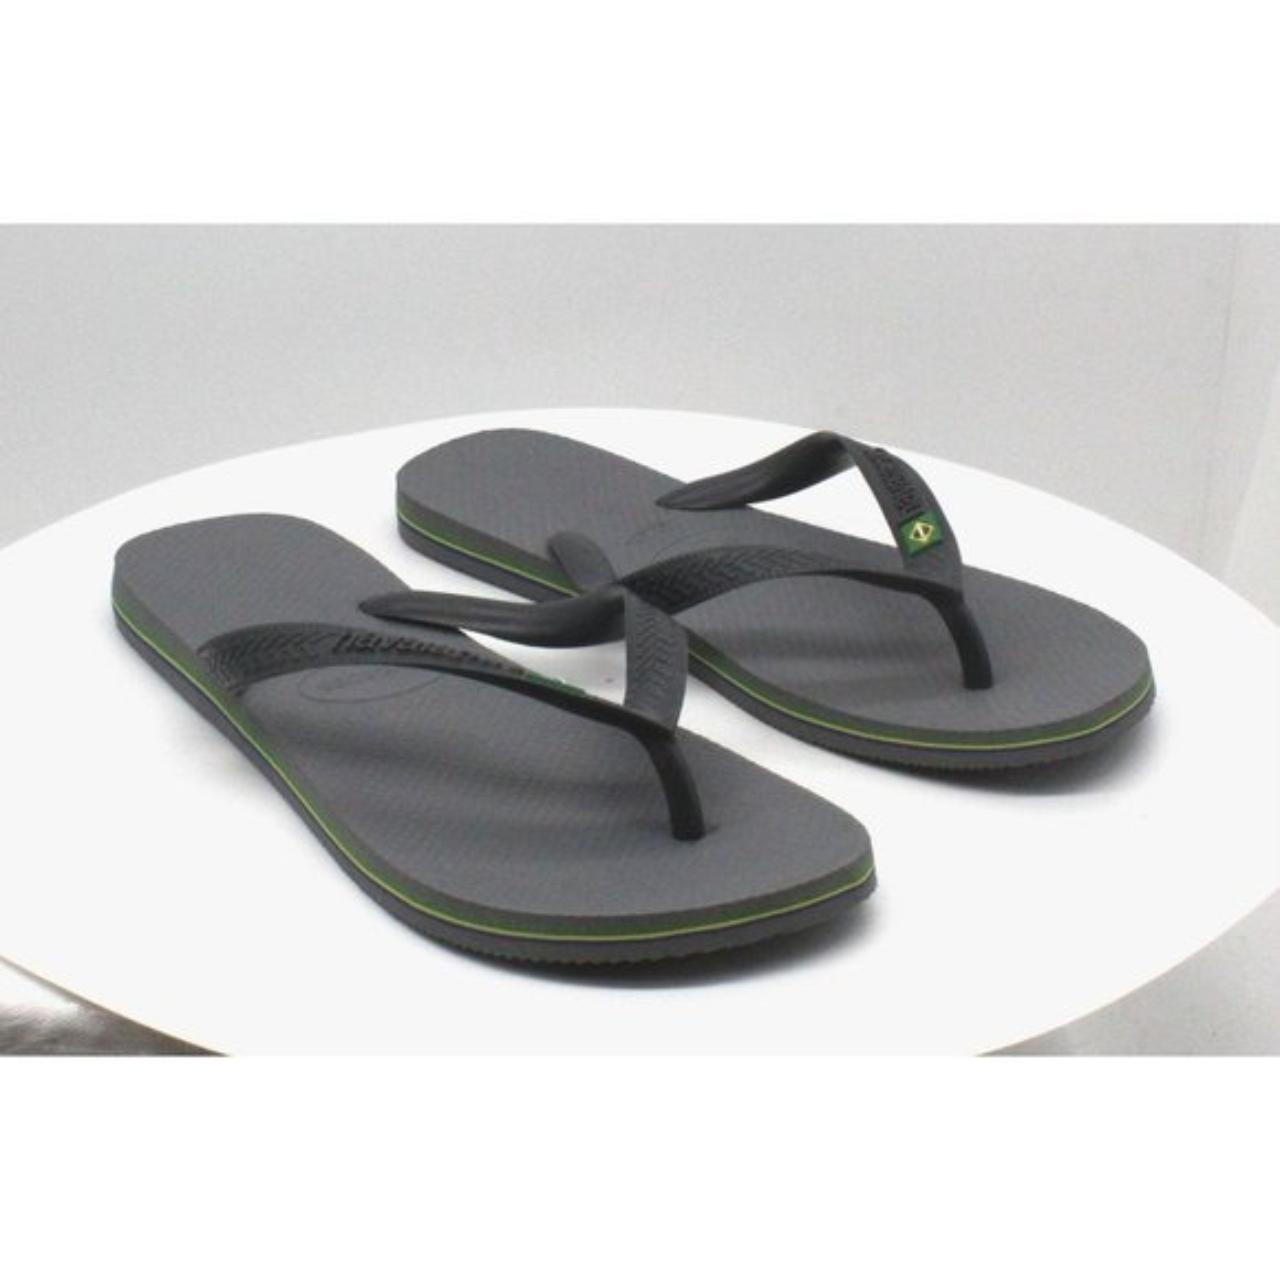 Product Image 1 - Havaianas Men's Brazil Flip-Flop Sandals